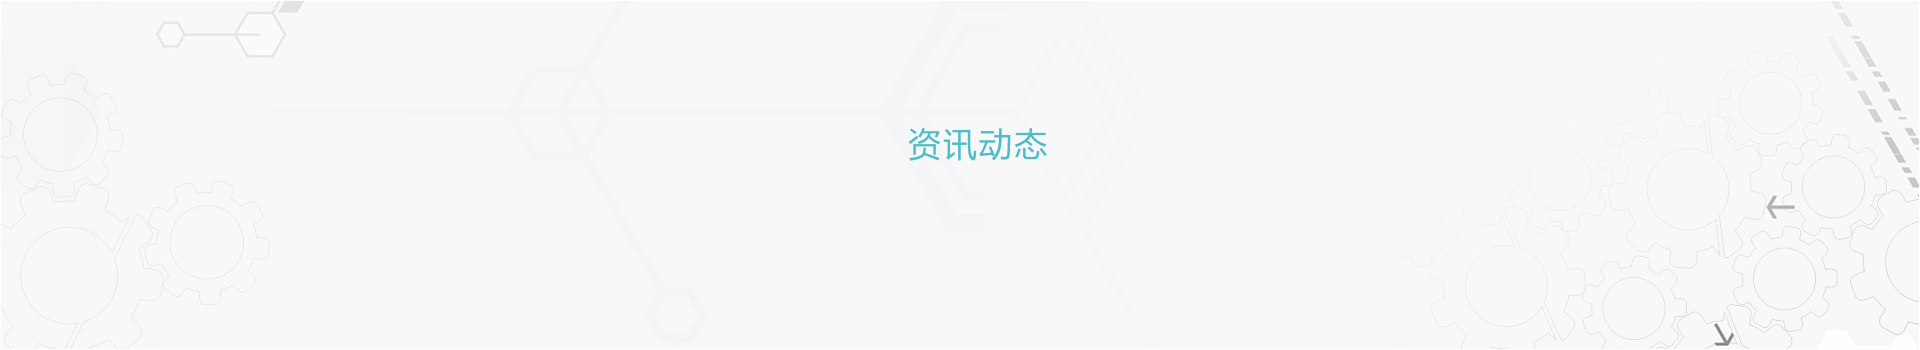 永贵电器：国浩律师（杭州）事务所关于公司发行股份及支付现金购买资产并募集配套资金的法律意见书